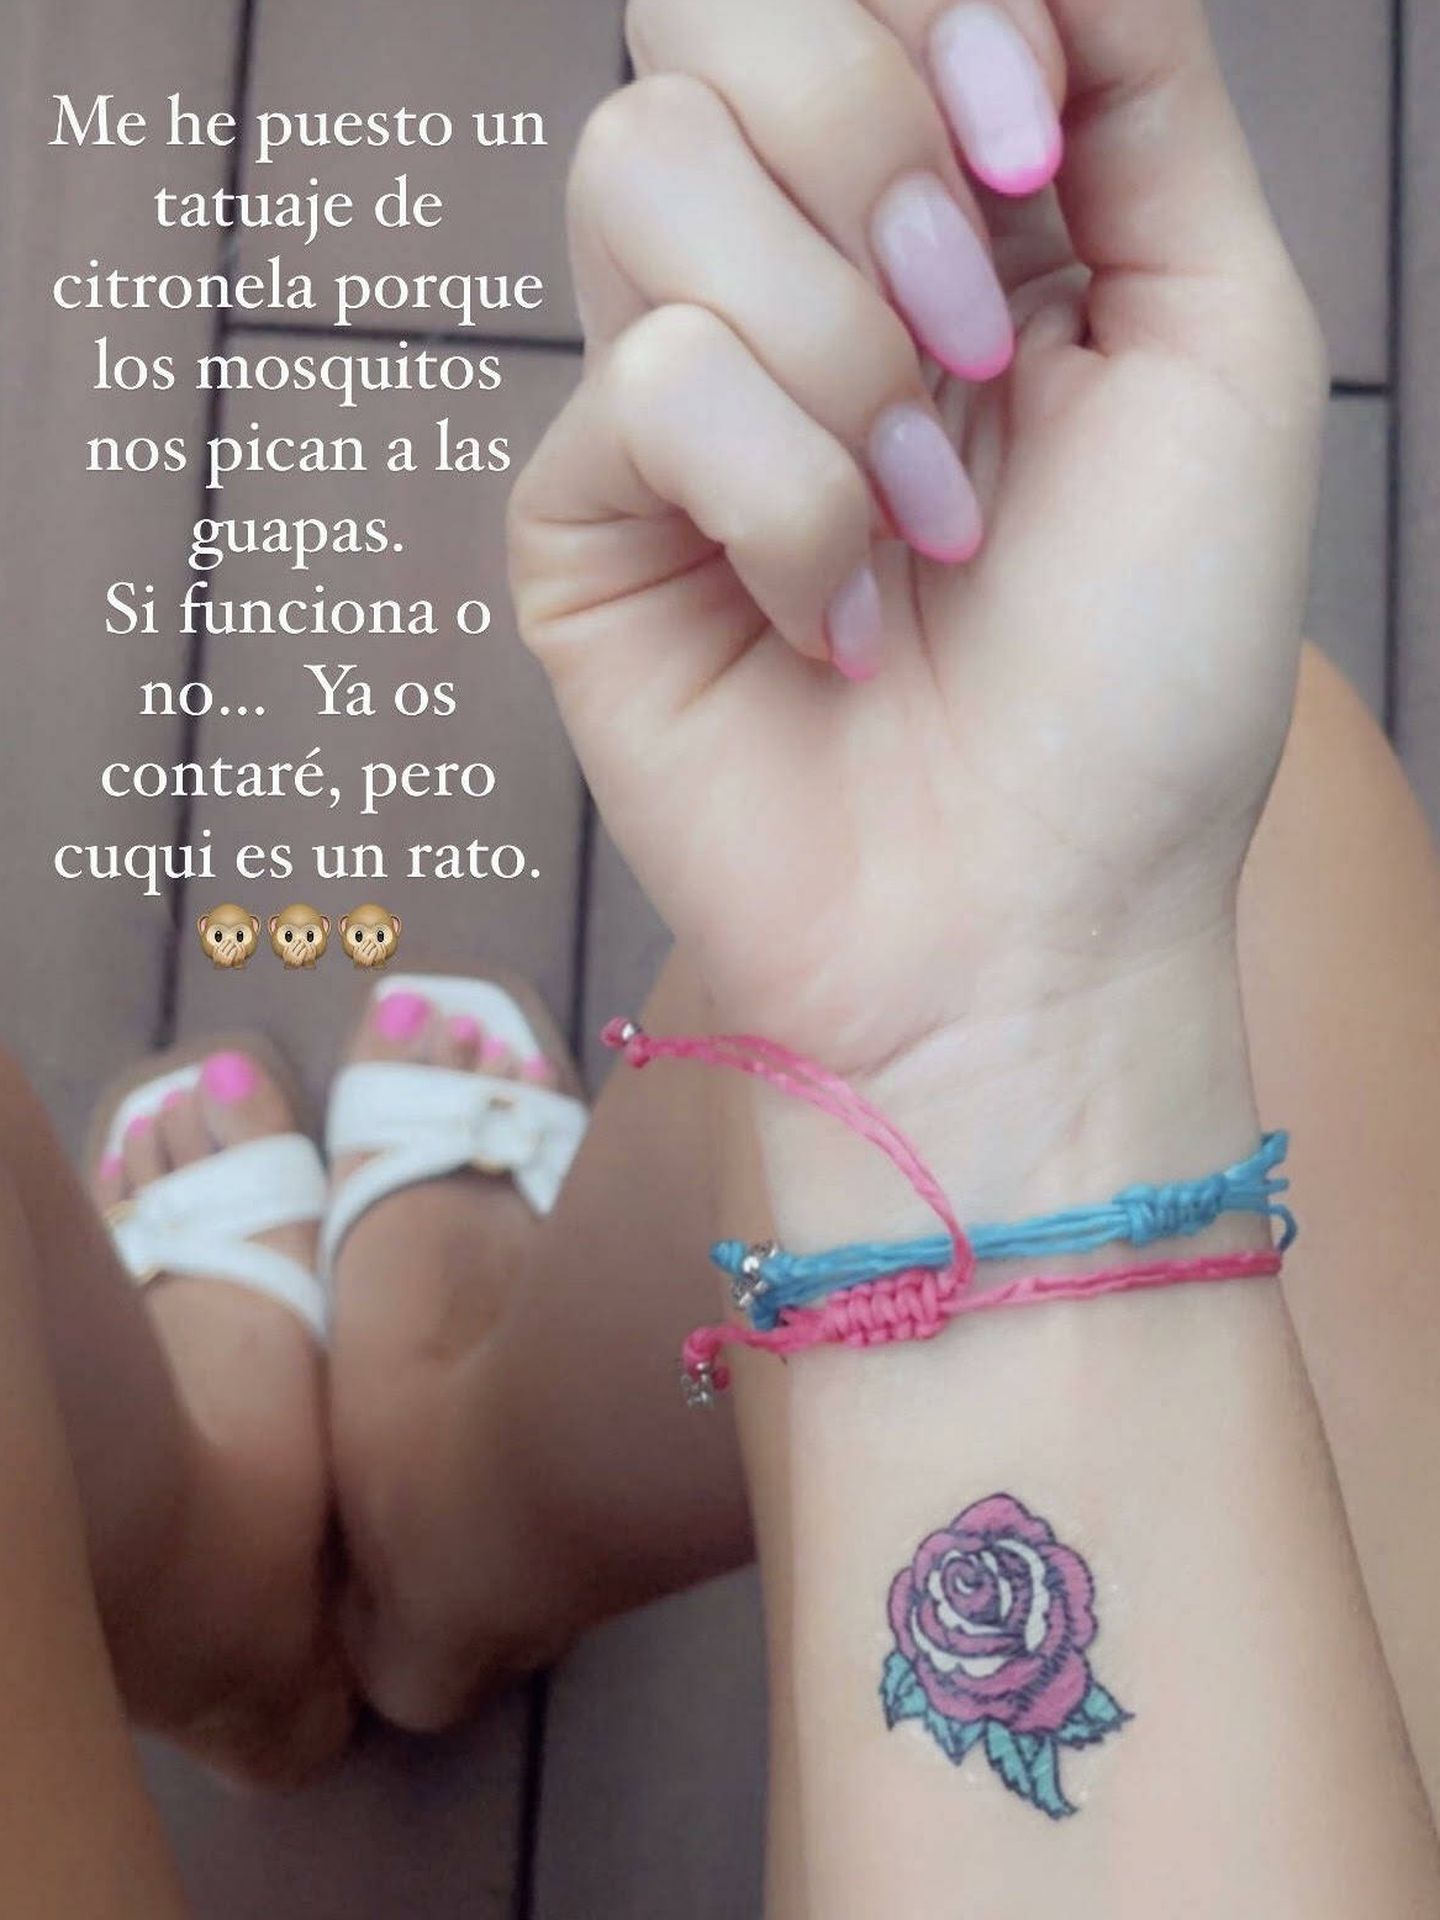 La influencer ha recomendado los tatuajes de citronela. (Instagram/ @lavecinarubia)